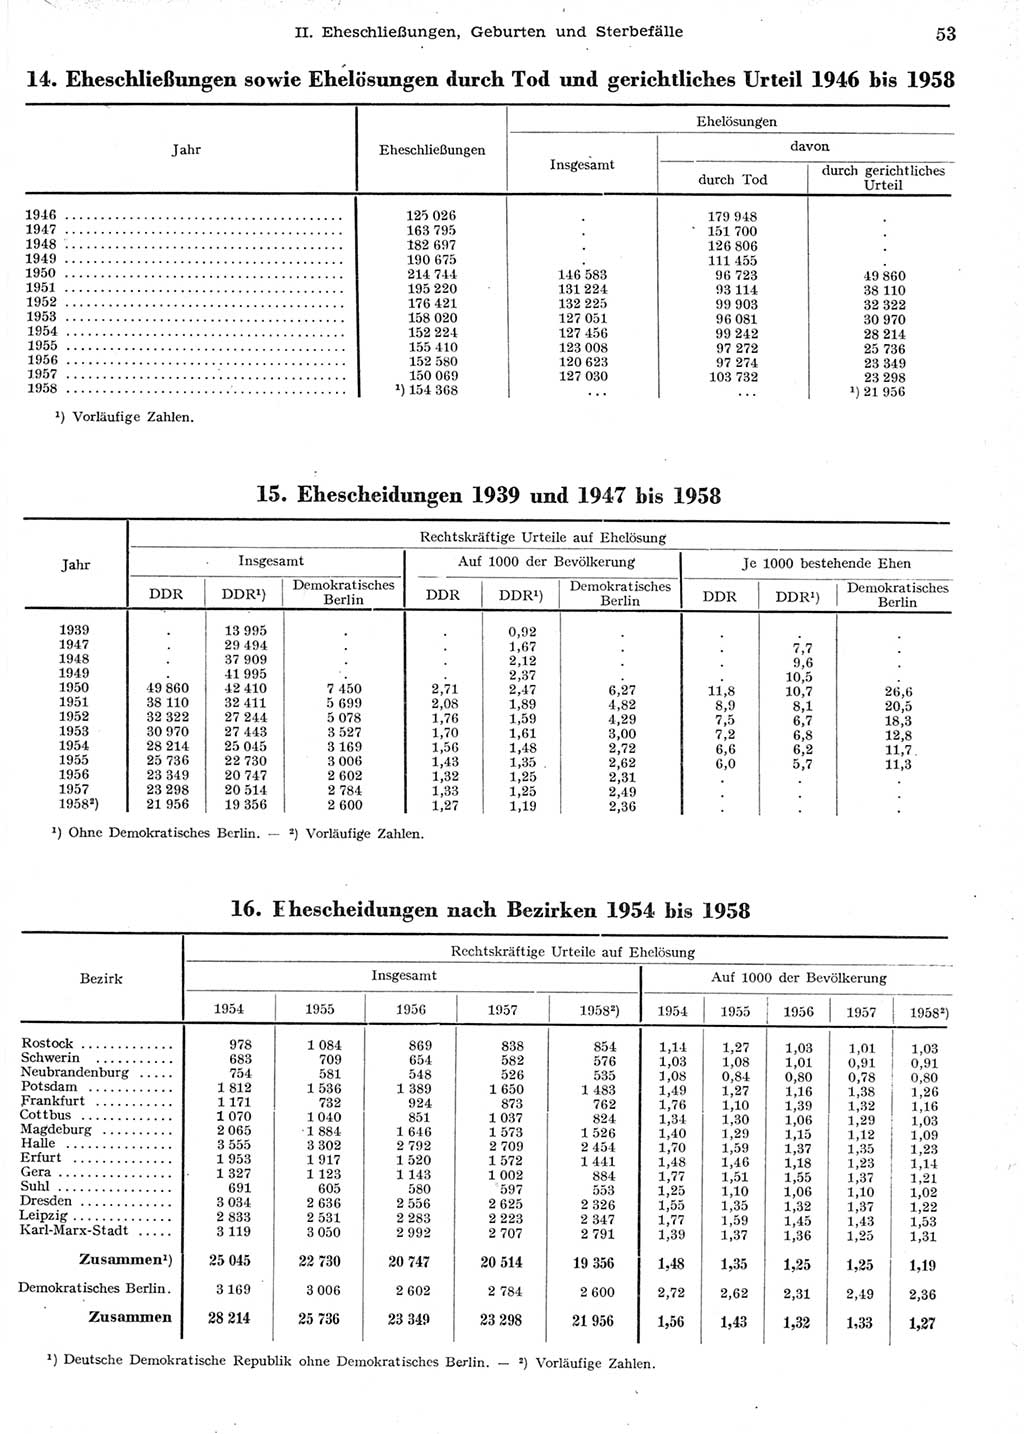 Statistisches Jahrbuch der Deutschen Demokratischen Republik (DDR) 1958, Seite 53 (Stat. Jb. DDR 1958, S. 53)